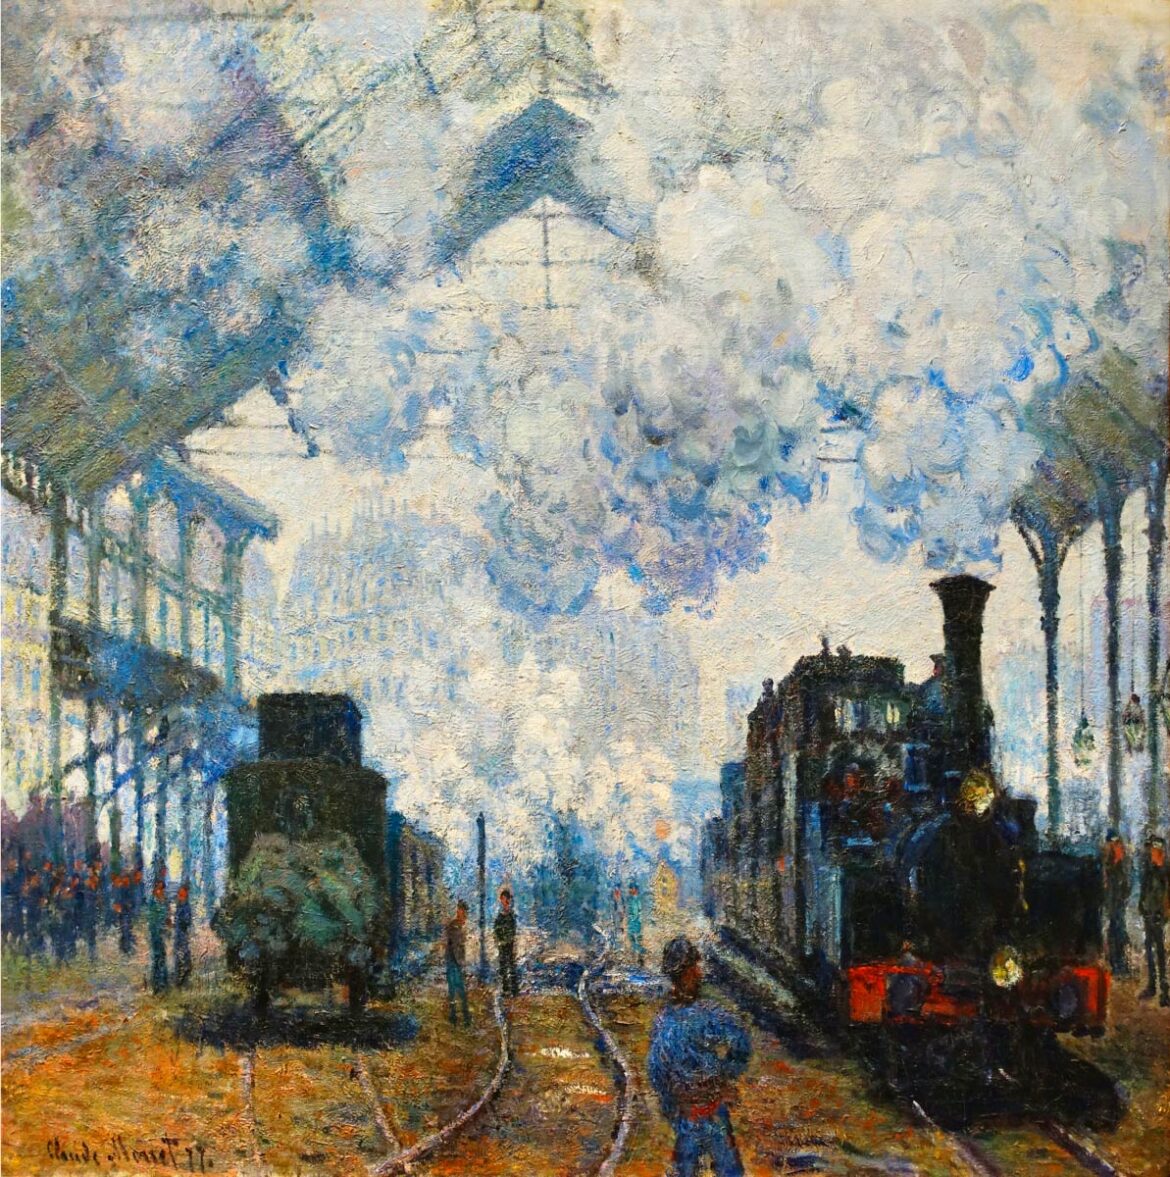 【無料壁紙】クロード・モネ「サンラザール駅の列車の到着 (1877)」 / Claude Monet_Arrival of the Normandy Train (1877)